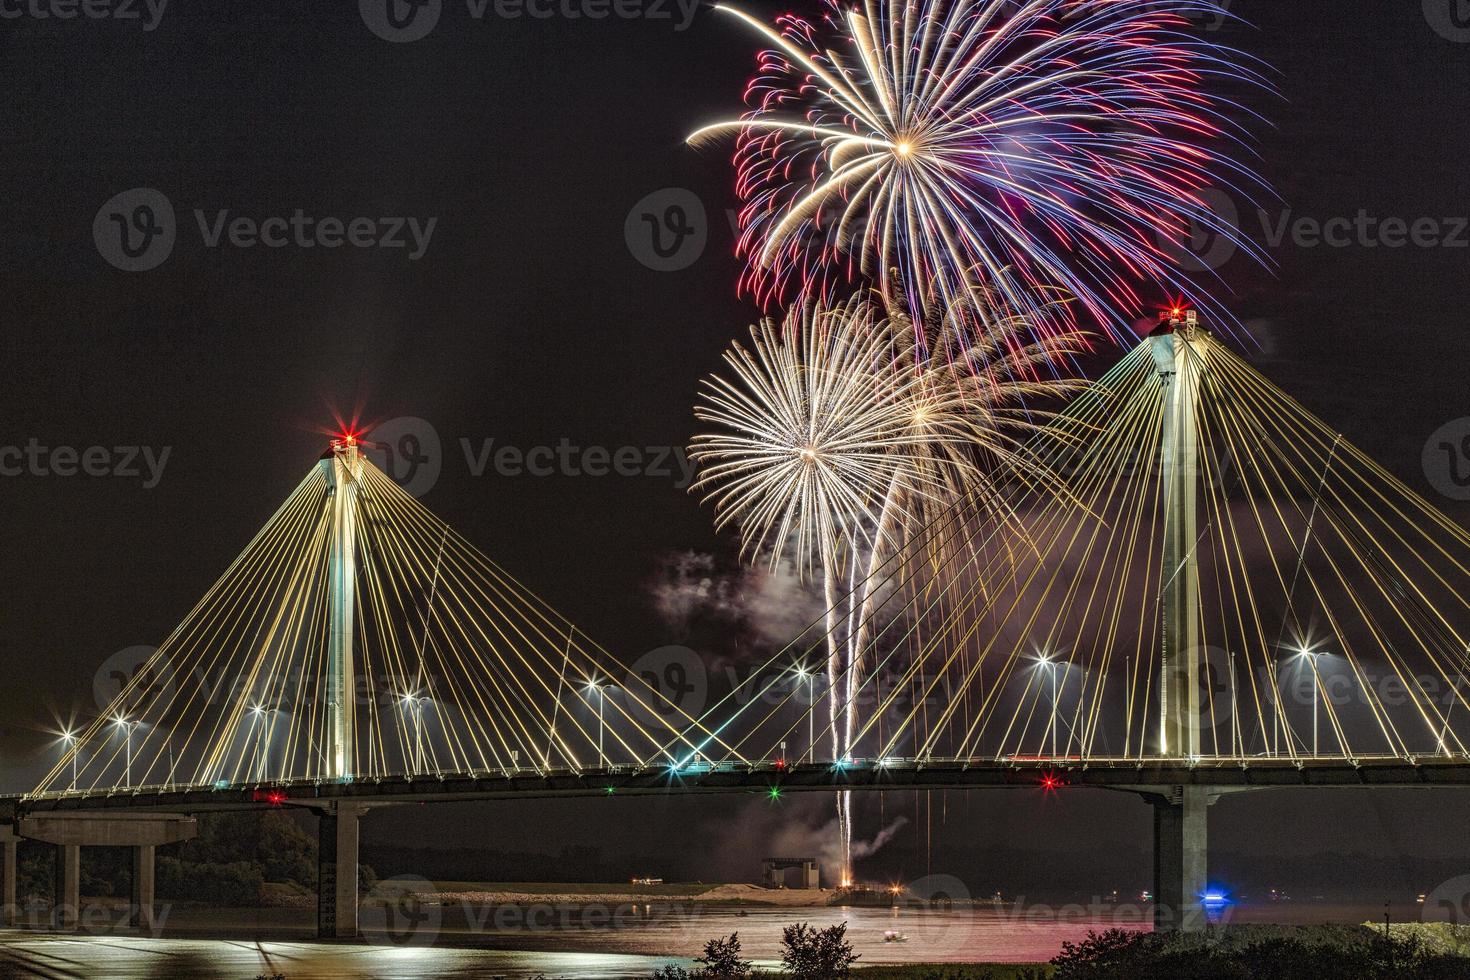 4 juli usa onafhankelijkheidsviering vuurwerk bovenop clark bridge in de grens van missouri en illinois, usa foto